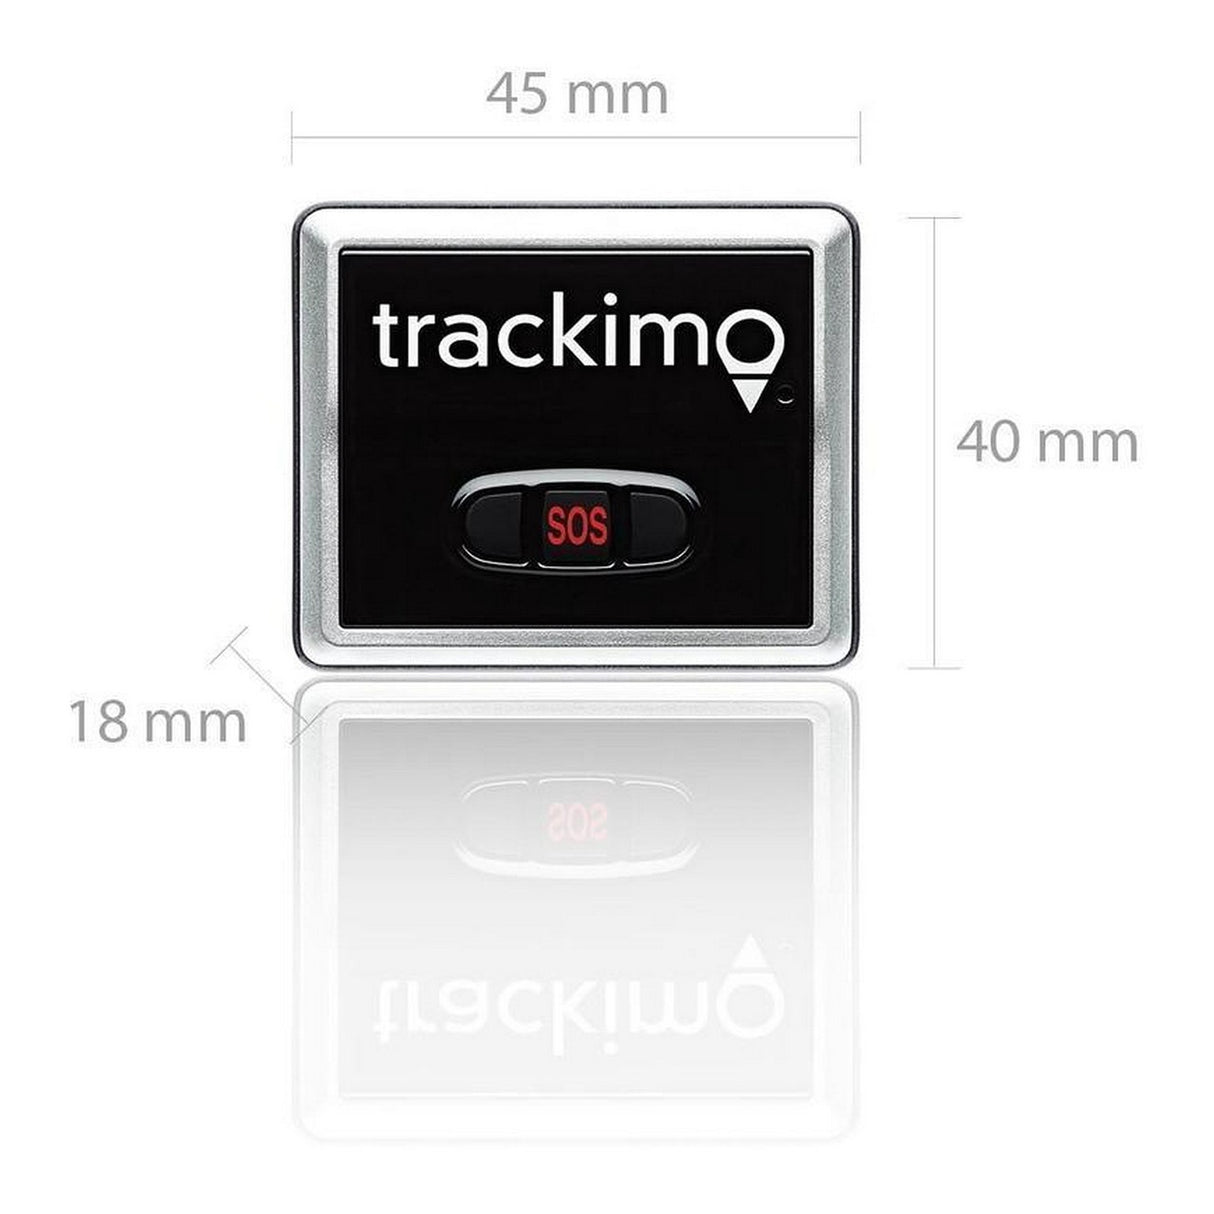 Trackimo Universal 3G and Car Kit